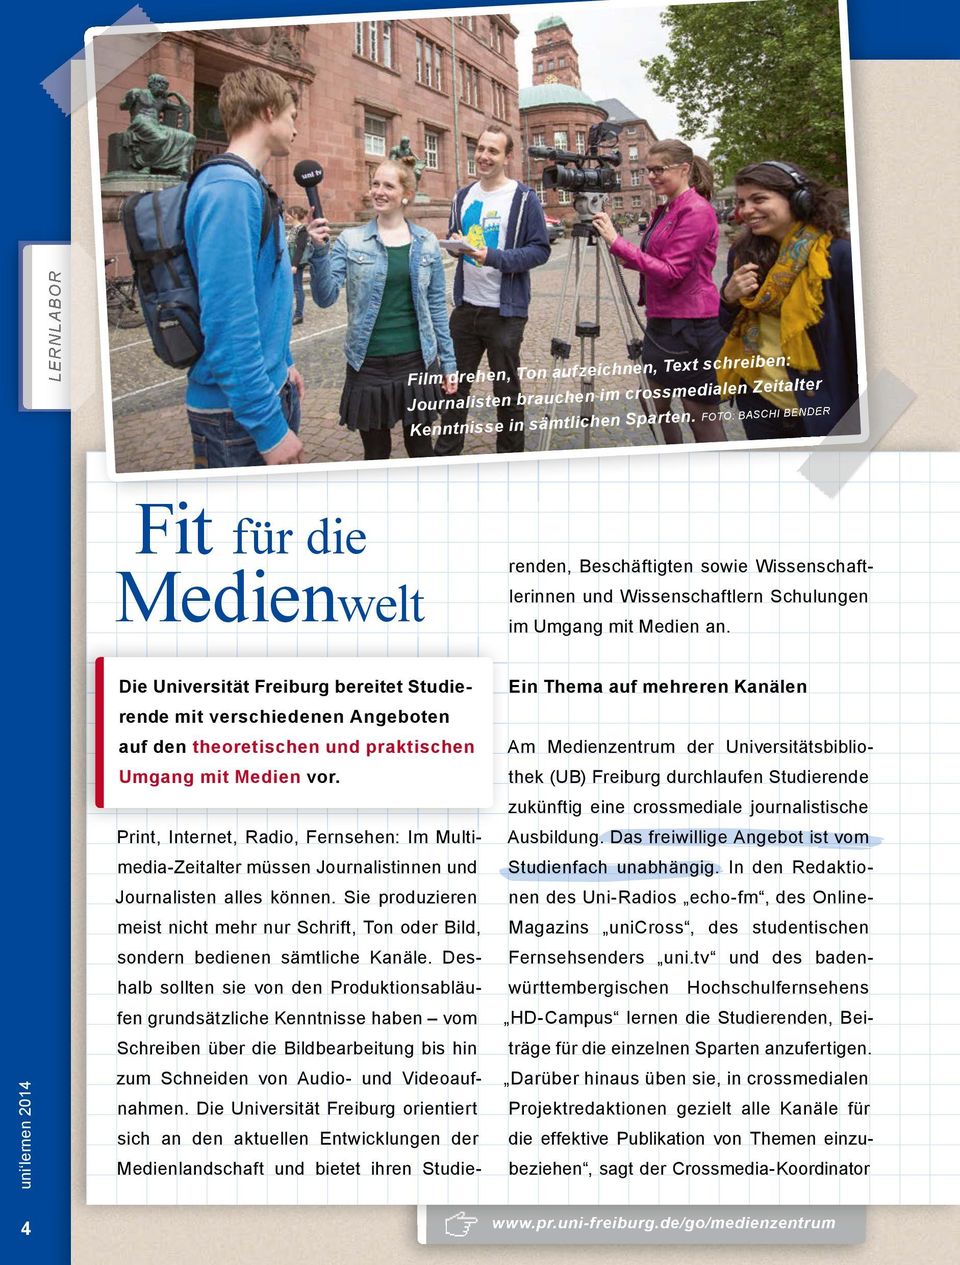 Die Universität Freiburg bereitet Studierende mit verschiedenen Angeboten auf den theoretischen und praktischen Umgang mit Medien vor.